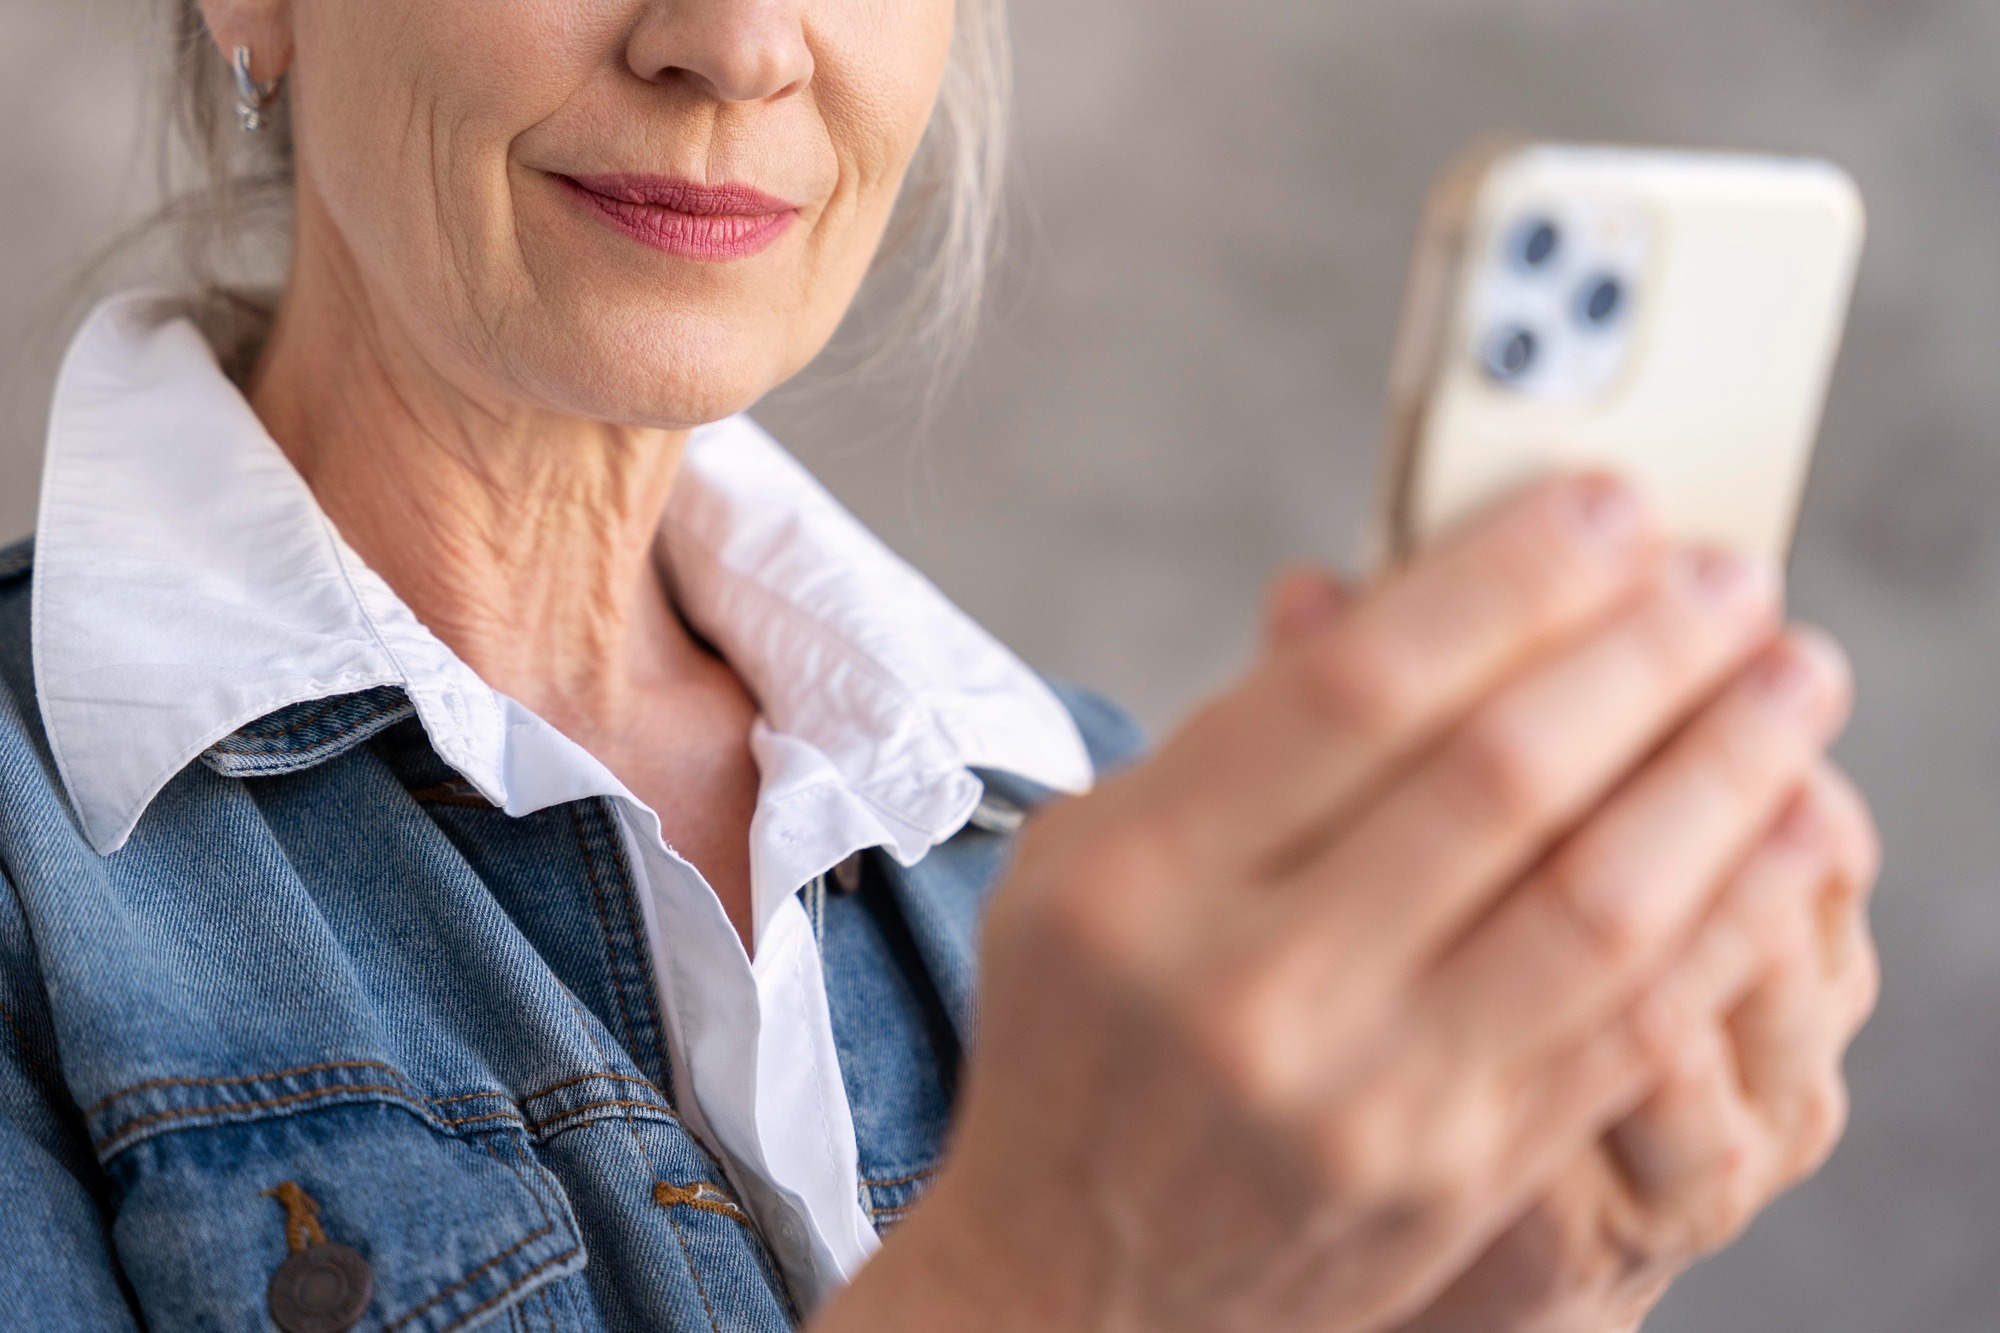  ‣ adn24 rizziconi (rc): anziana riprende con il suo smartphone minori che la molestano, denunce